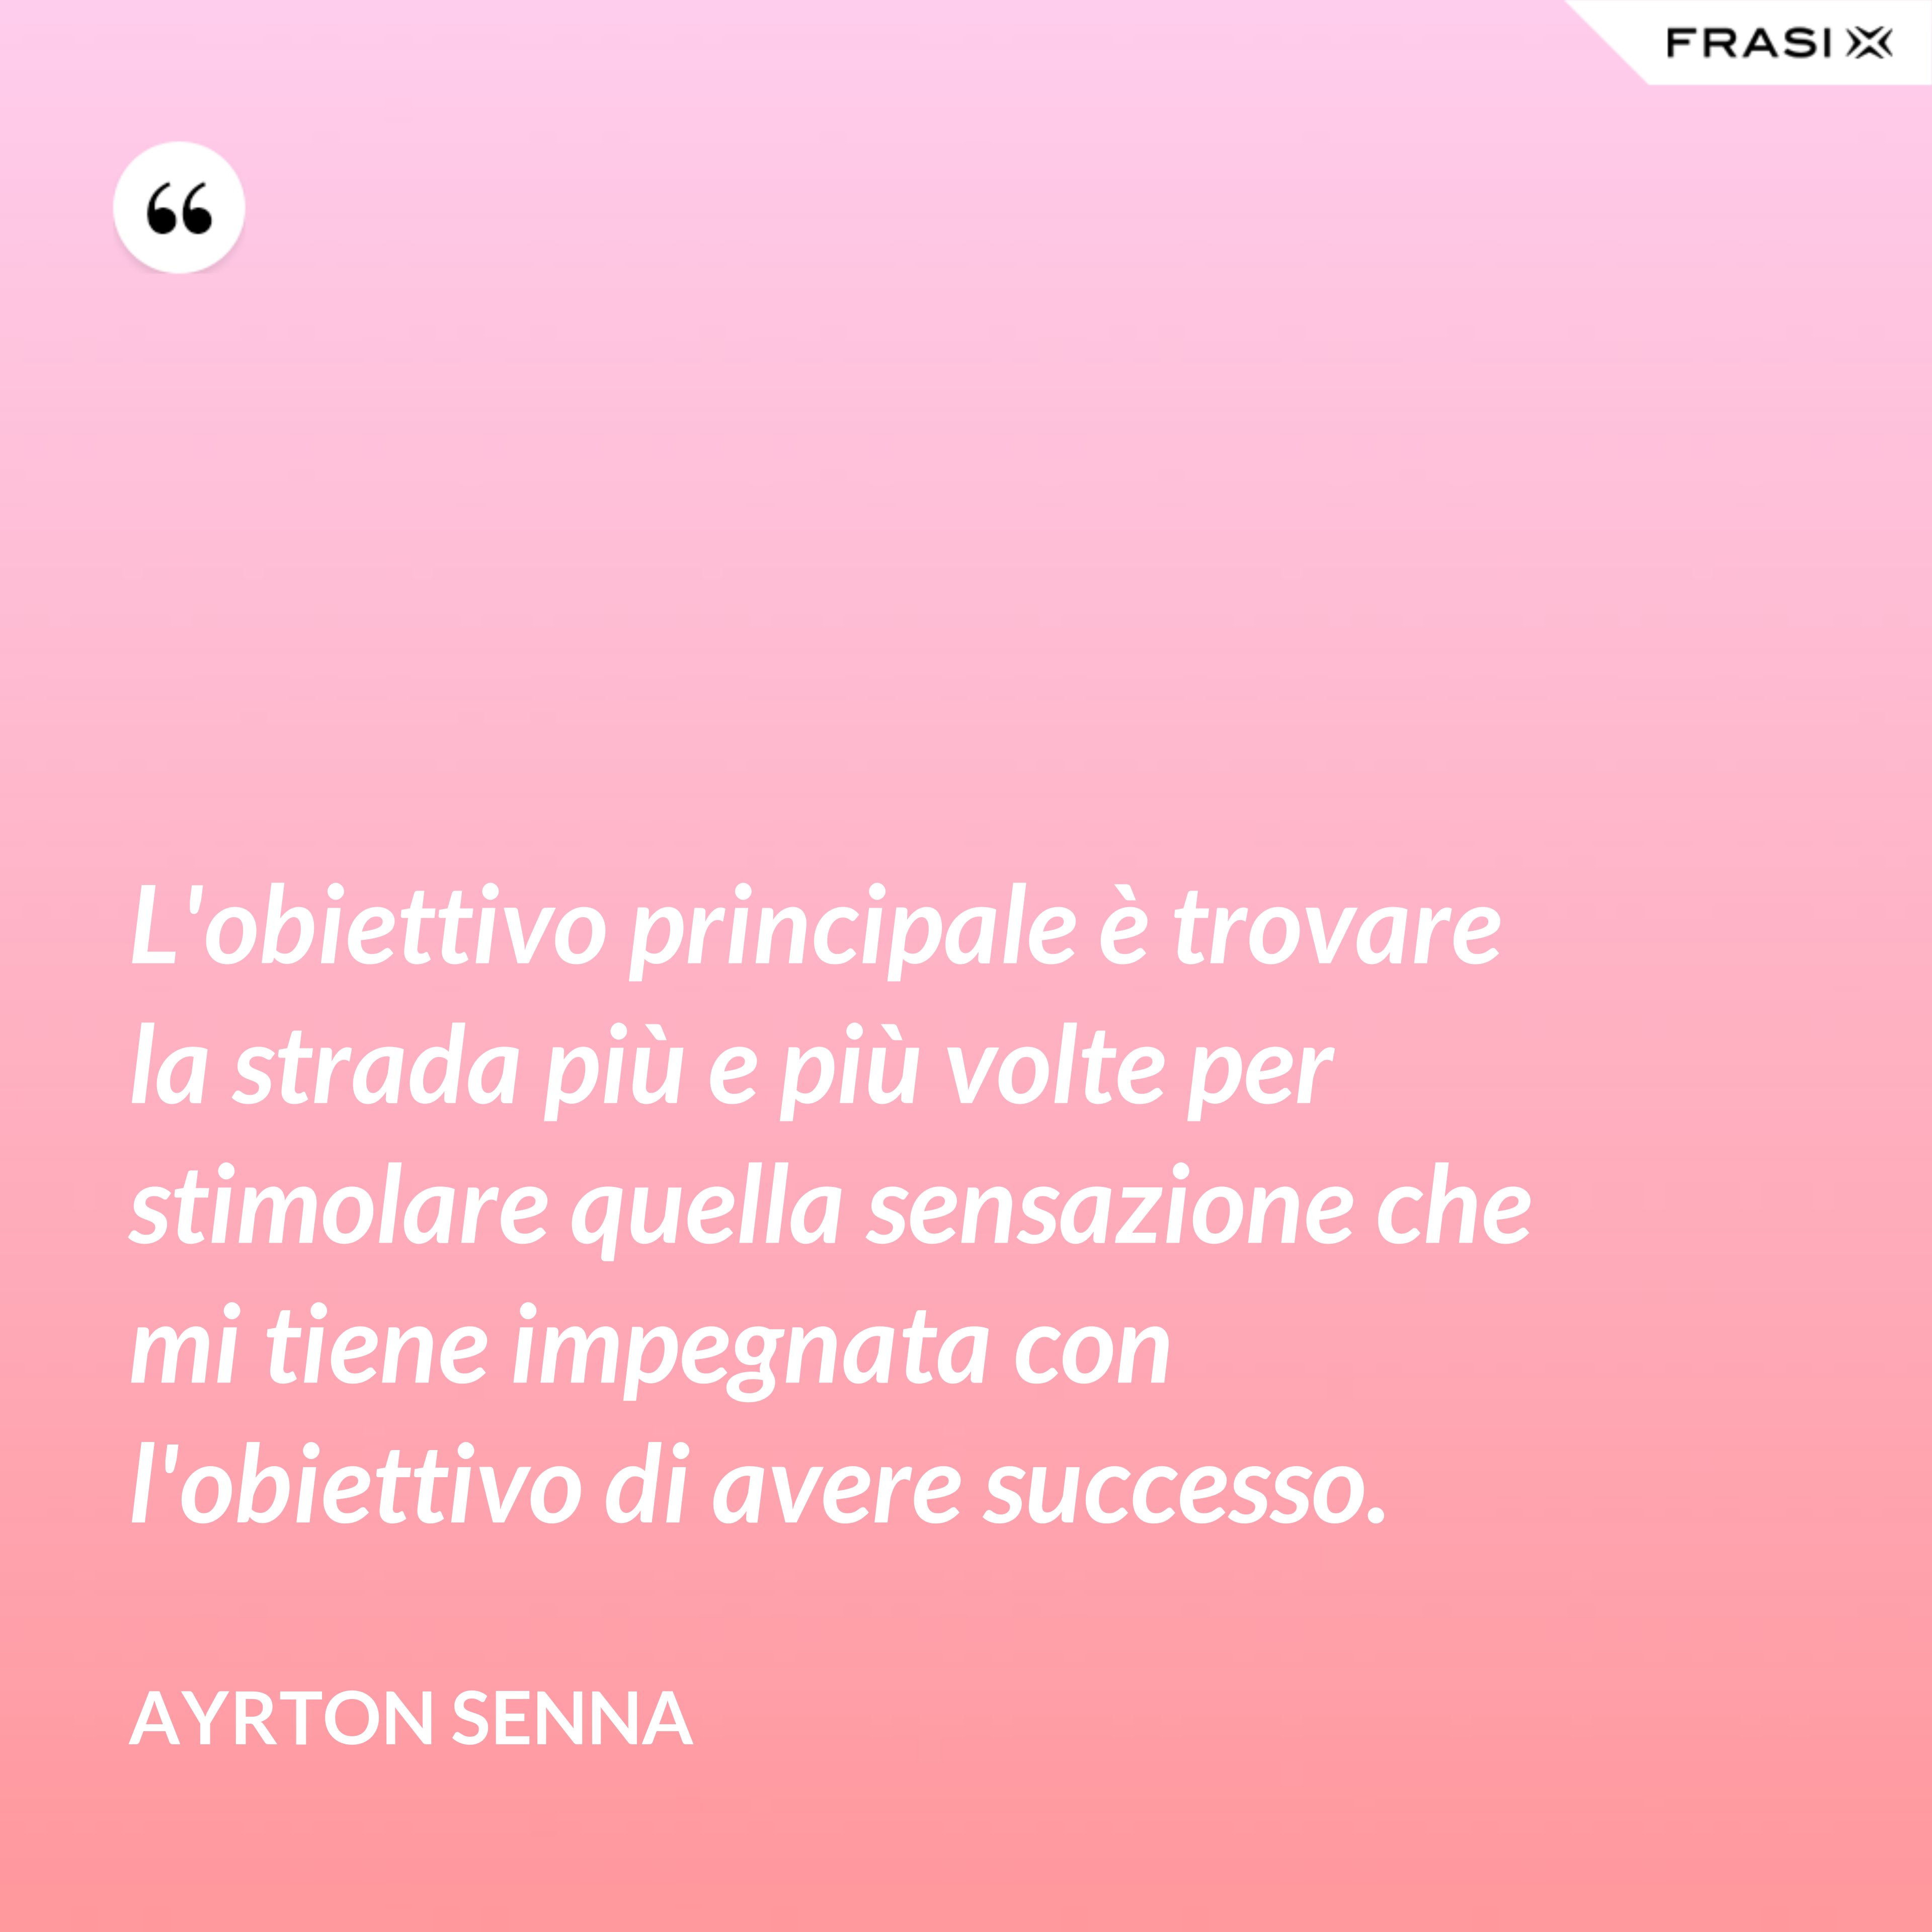 L'obiettivo principale è trovare la strada più e più volte per stimolare quella sensazione che mi tiene impegnata con l'obiettivo di avere successo. - Ayrton Senna